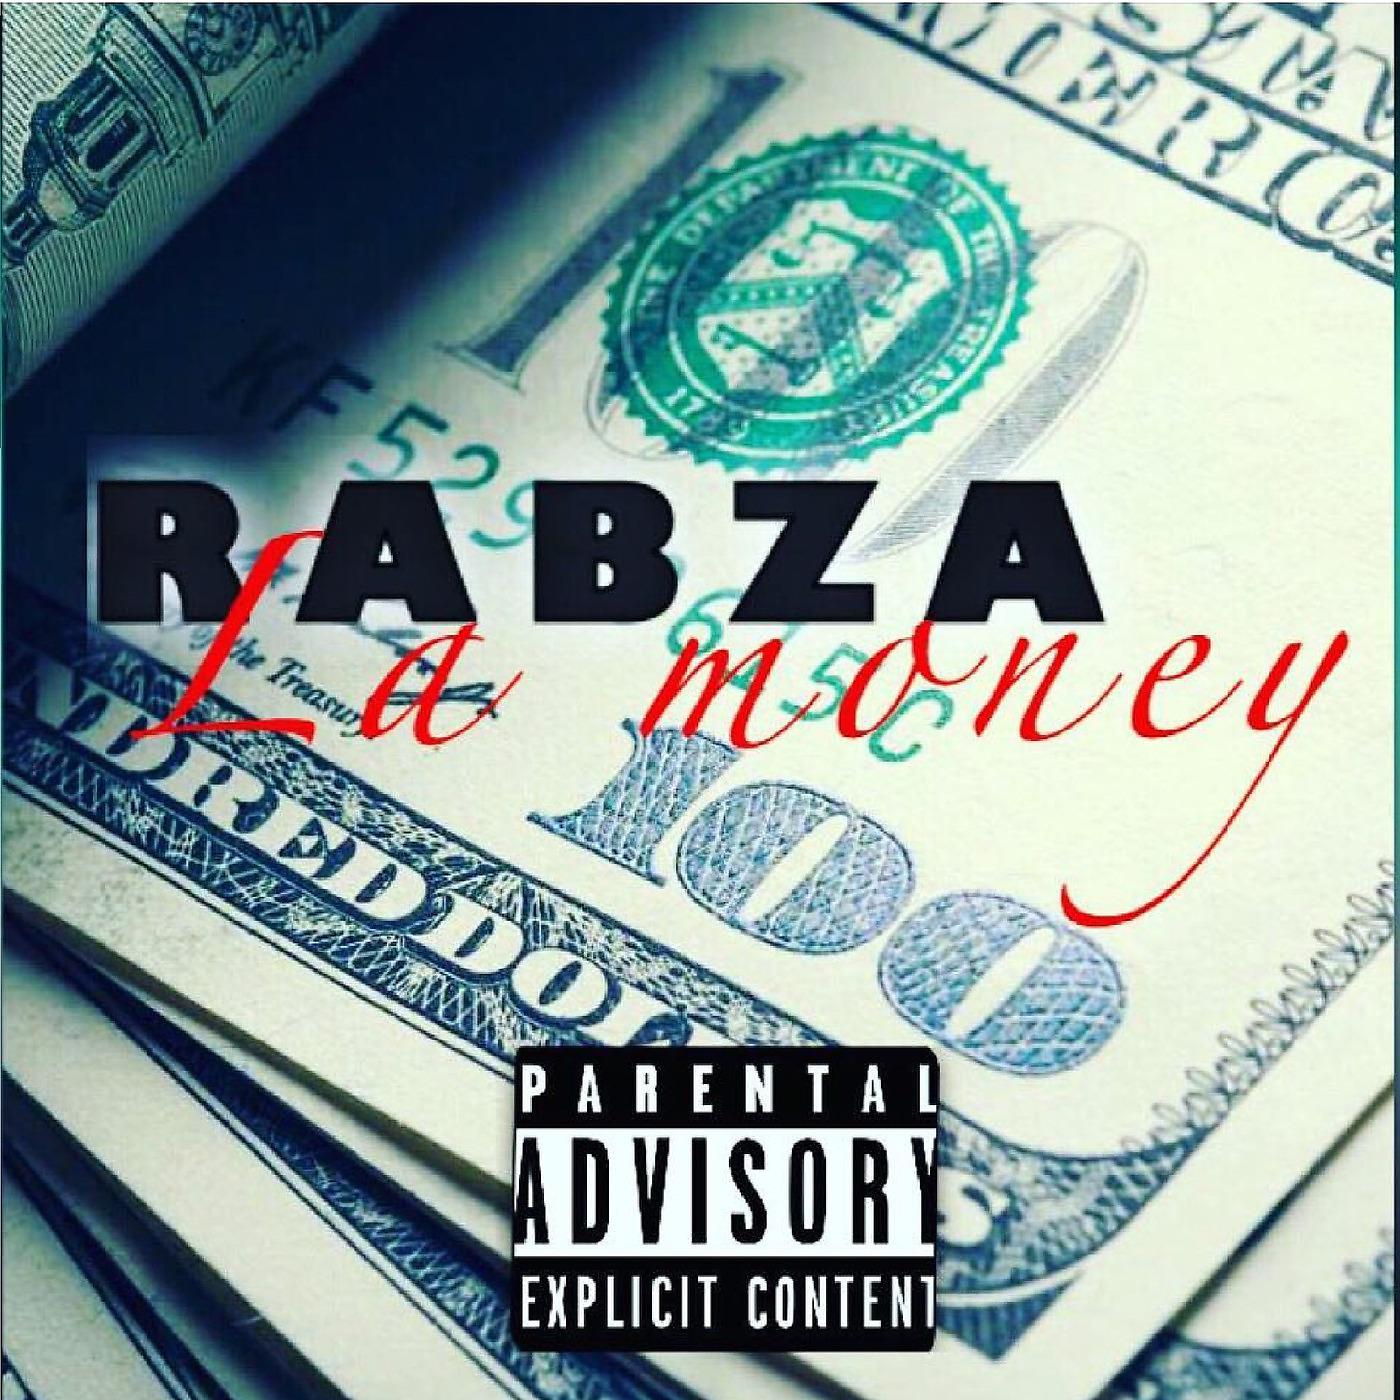 Постер альбома La Money